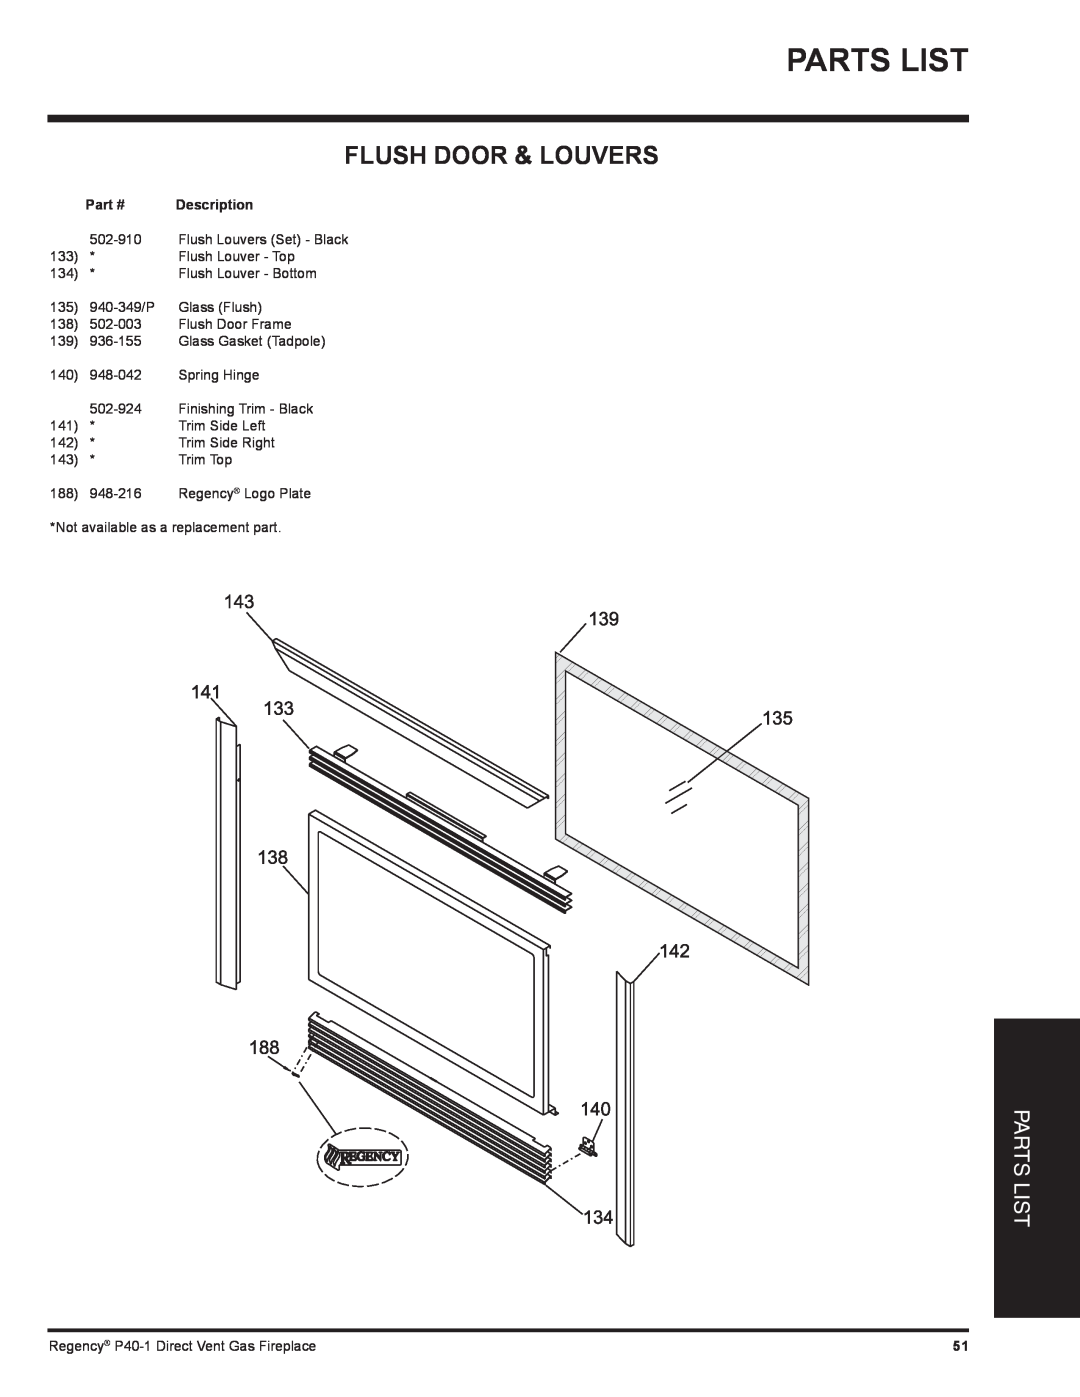 Regency P40-LP1, P40-NG1 installation manual Flush Door & Louvers, Parts List, Part #, Description 